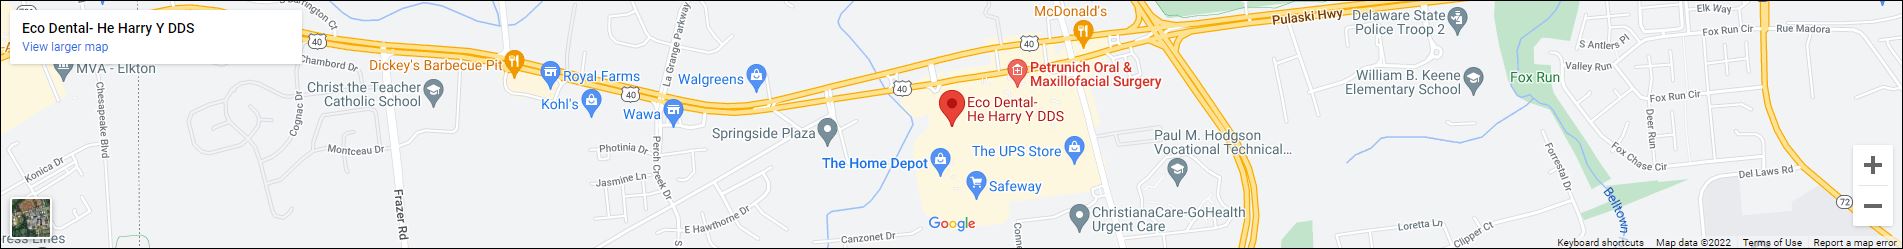 Eco Dental Delaware